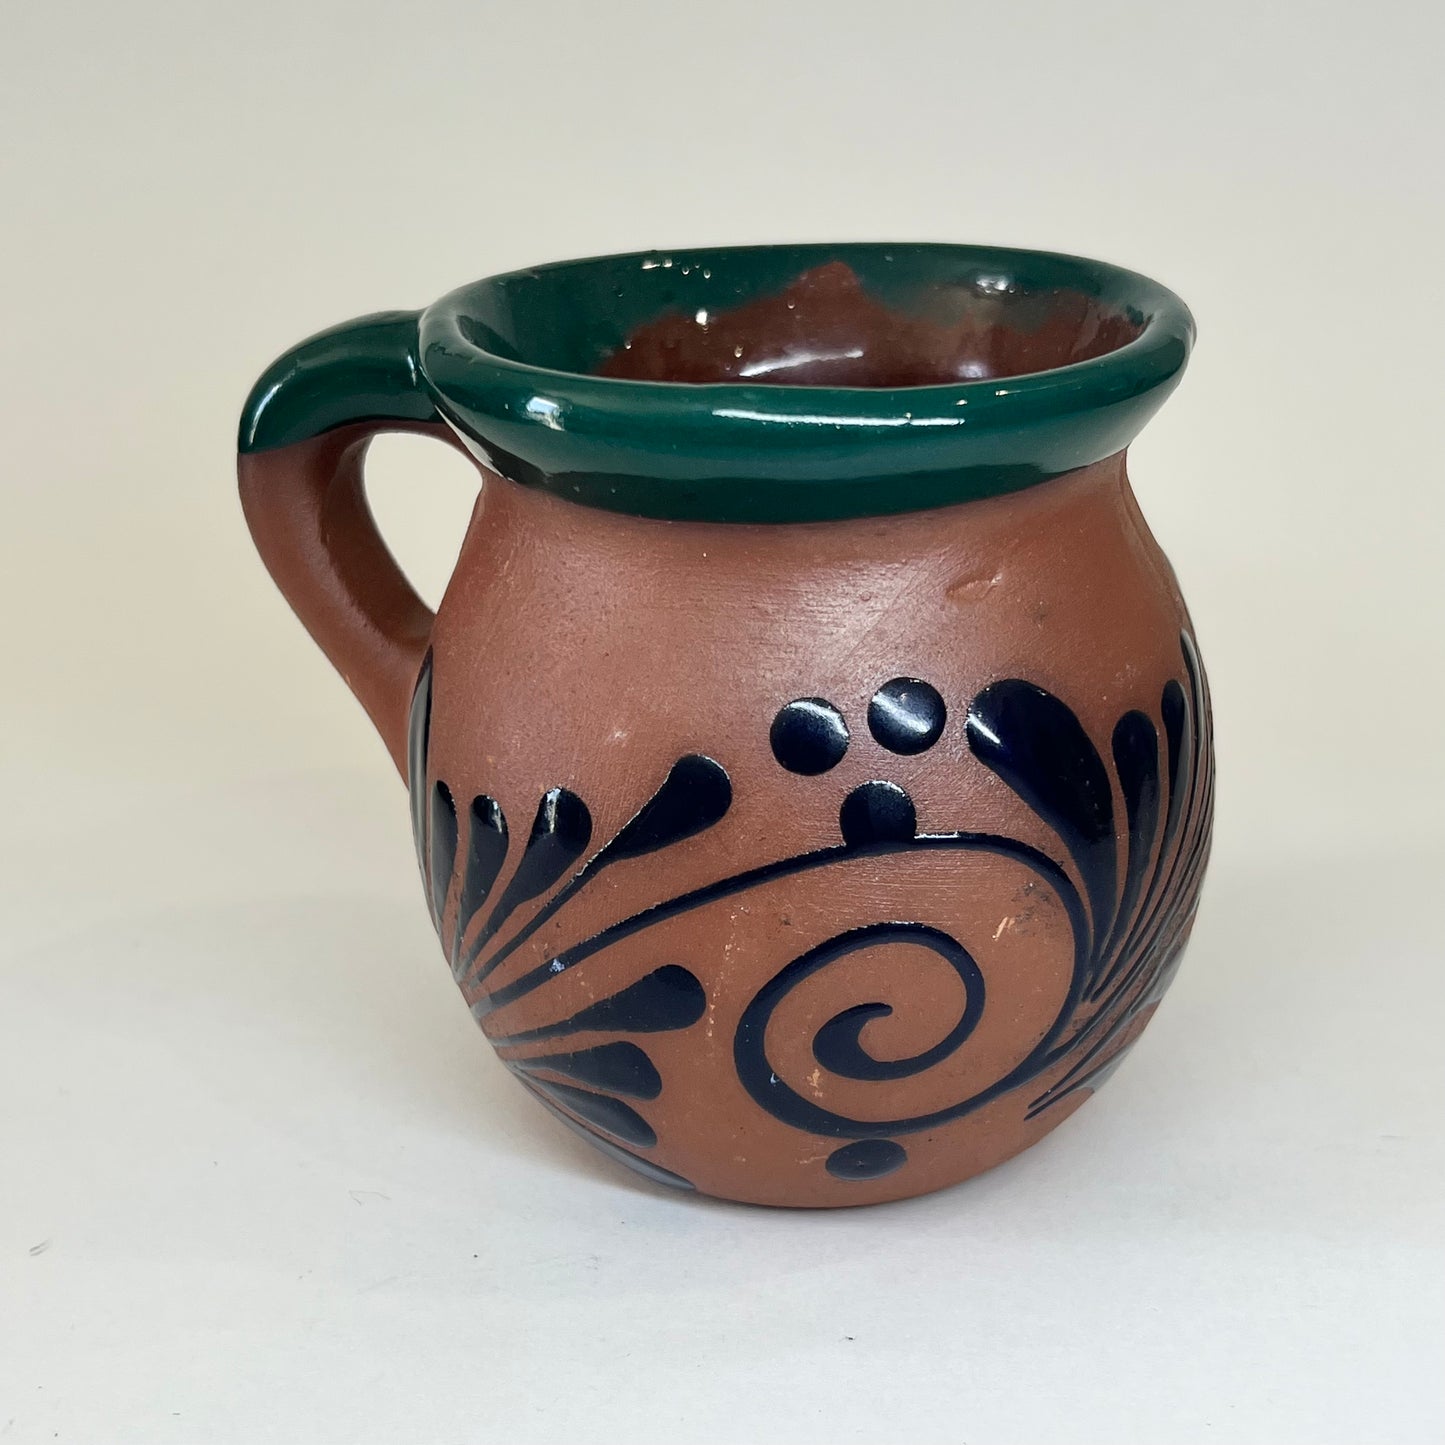 Painted Ceramic Mug